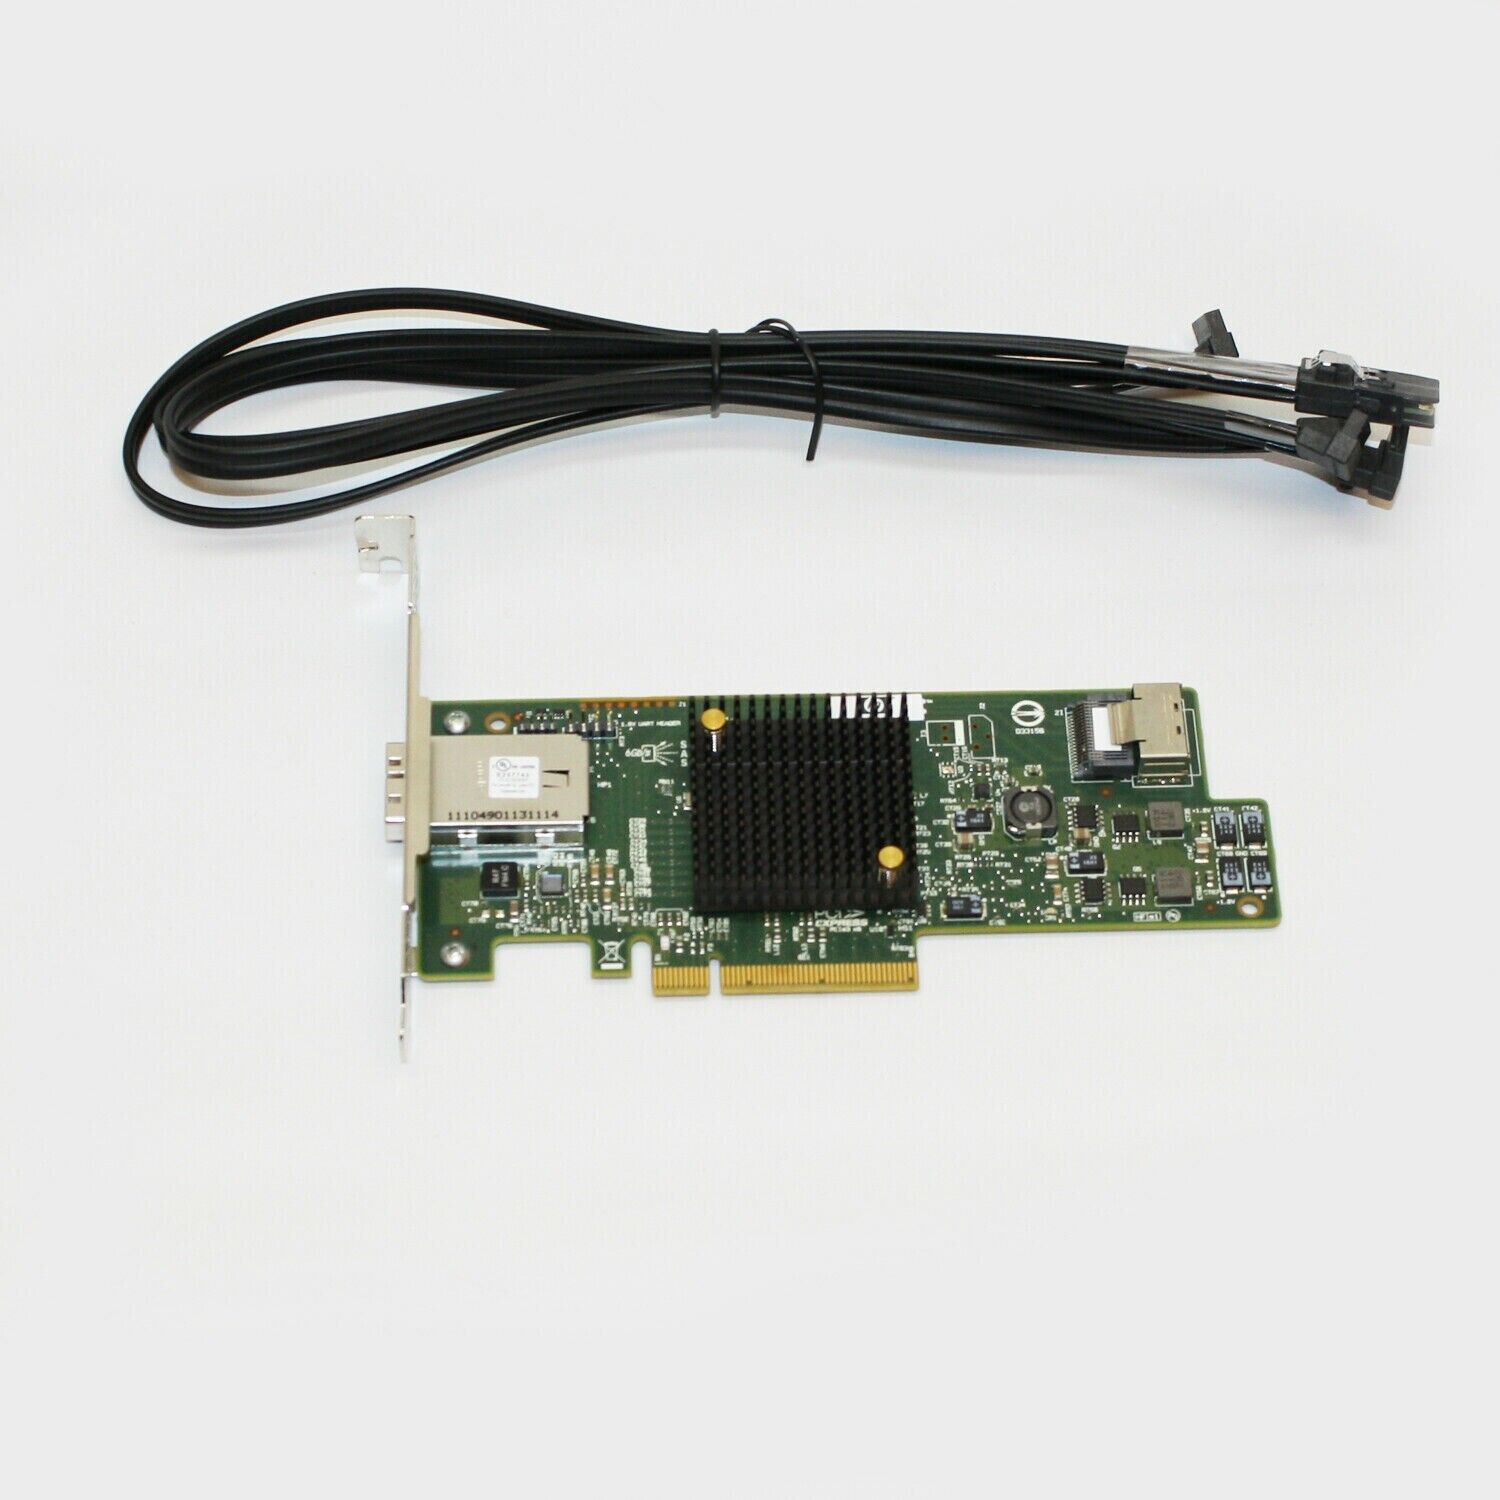 HP LSI 9217-4i4e SAS 6Gb/s Raid Controller Card 792099-001 725504-002 w/ cables